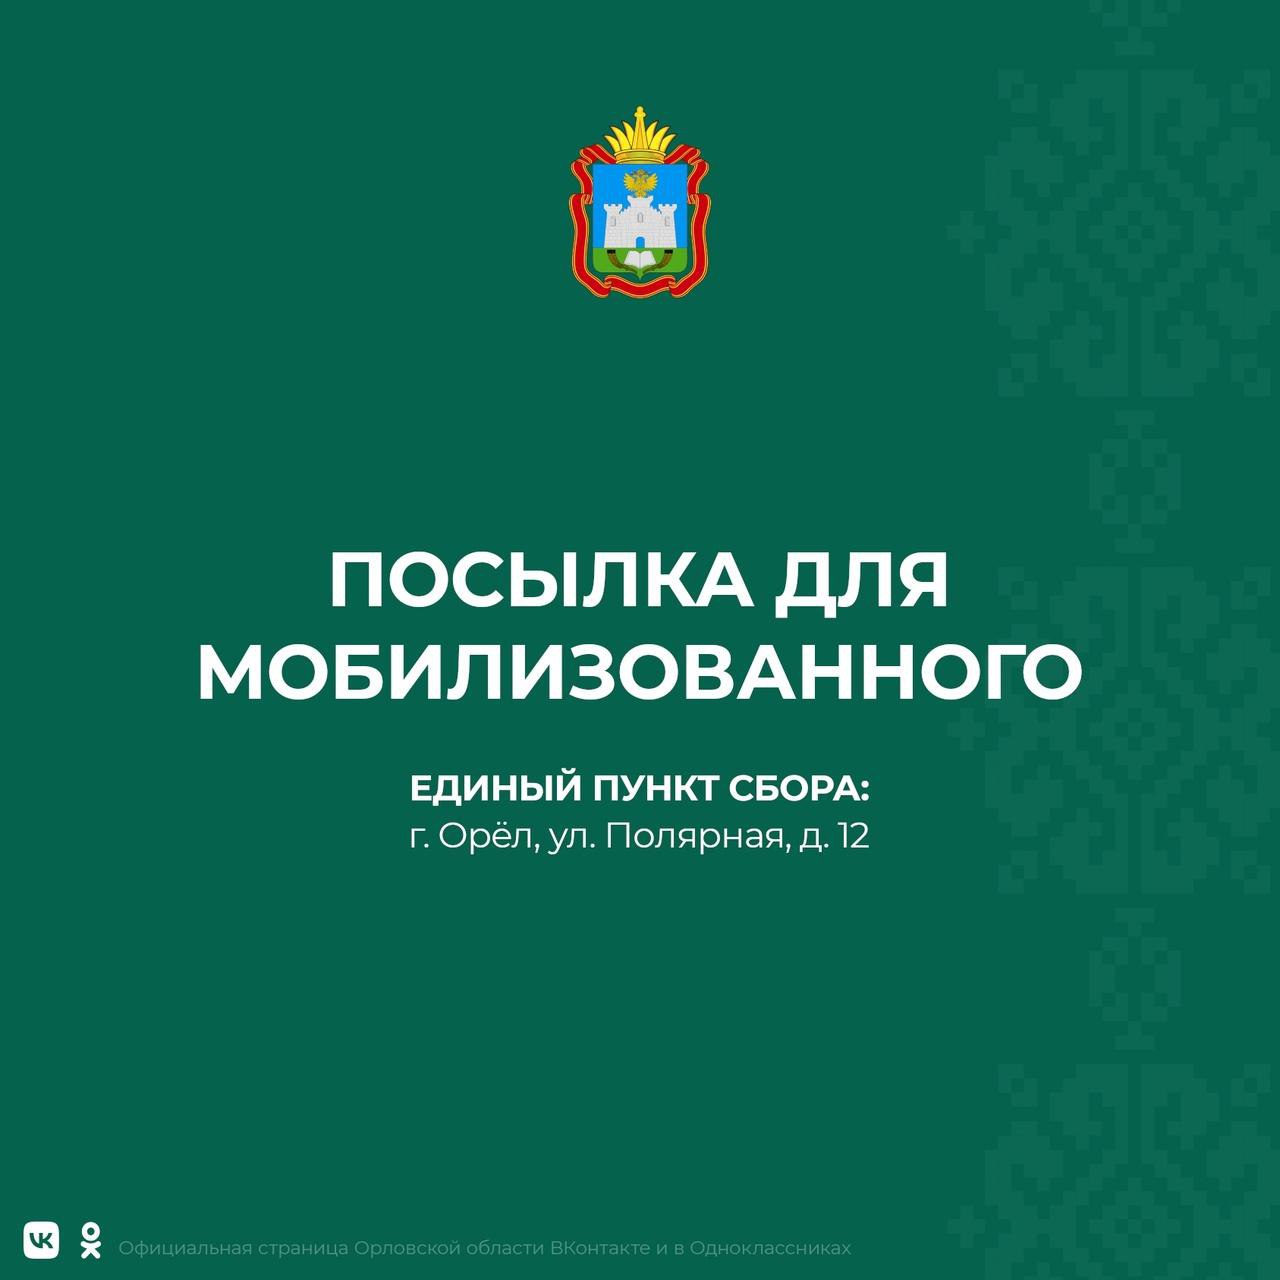 Губернатор Орловской области рассказал о создании единого пункта приёма посылок для мобилизованных граждан